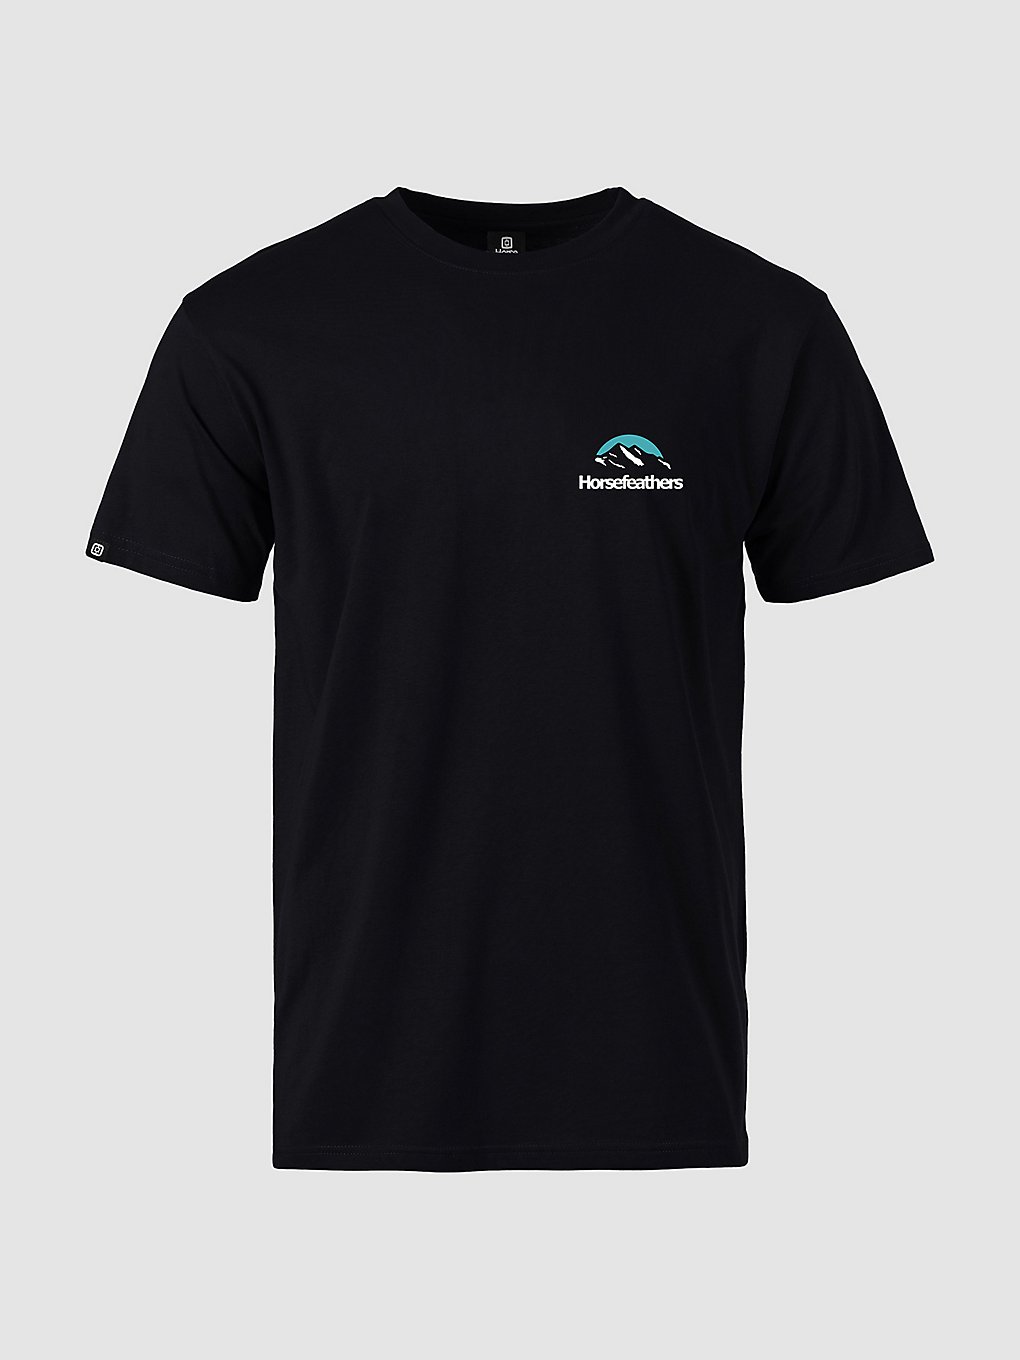 Horsefeathers Mount T-Shirt black kaufen